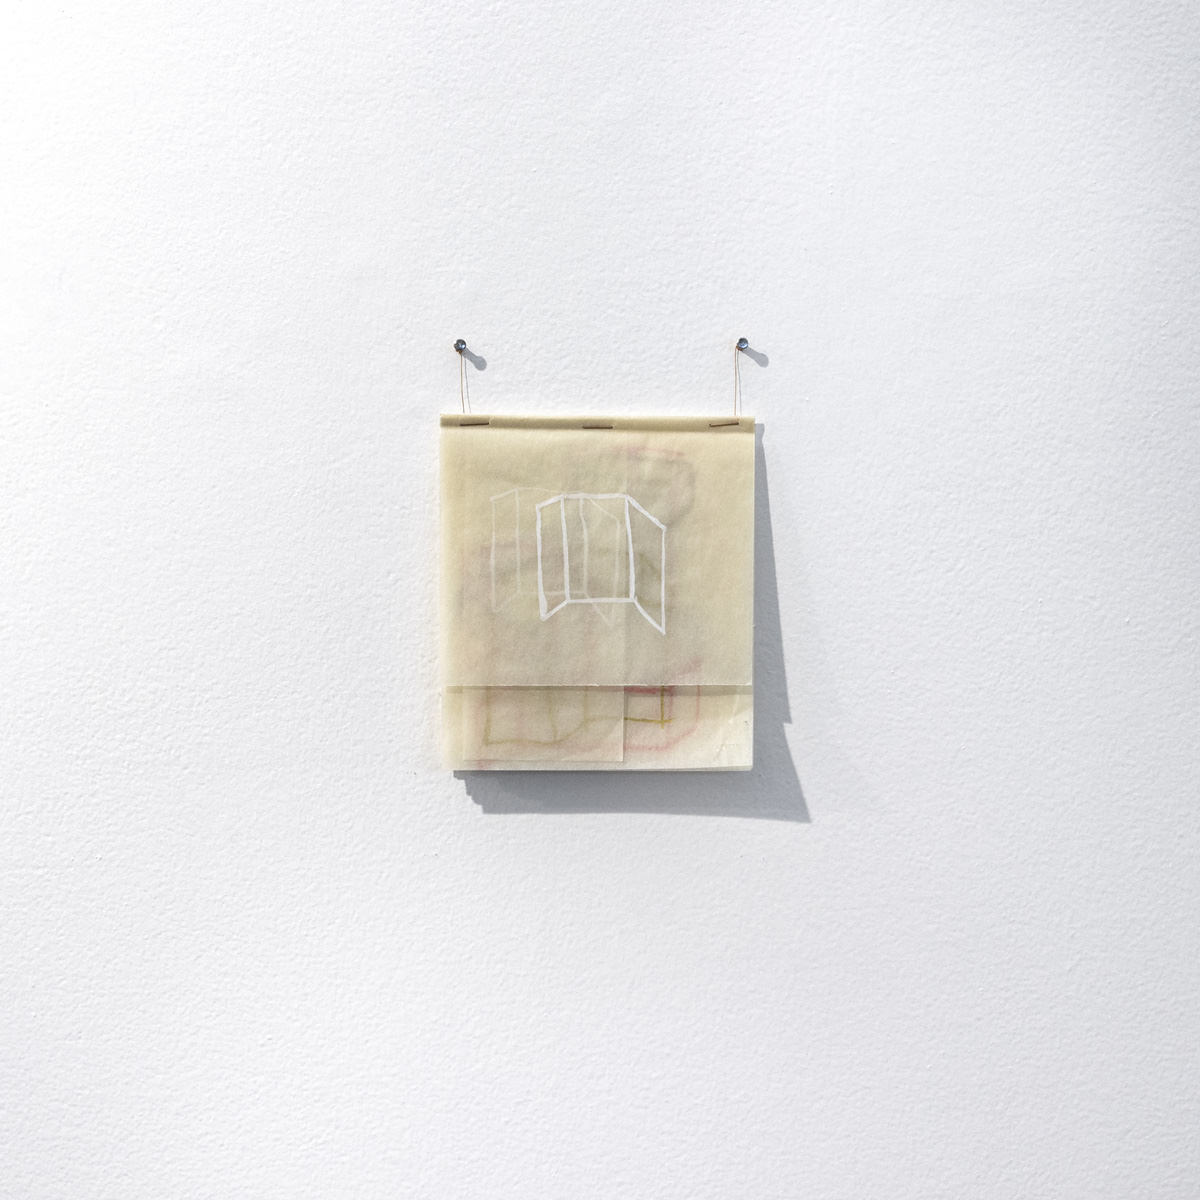 فلافيا ريبيرو, رسم, 2019 - الغواش ومسحوق البرونز على ورقة مزدوجة من ورق الرسم - 28,7 x 21 سم. صور: الكشف.